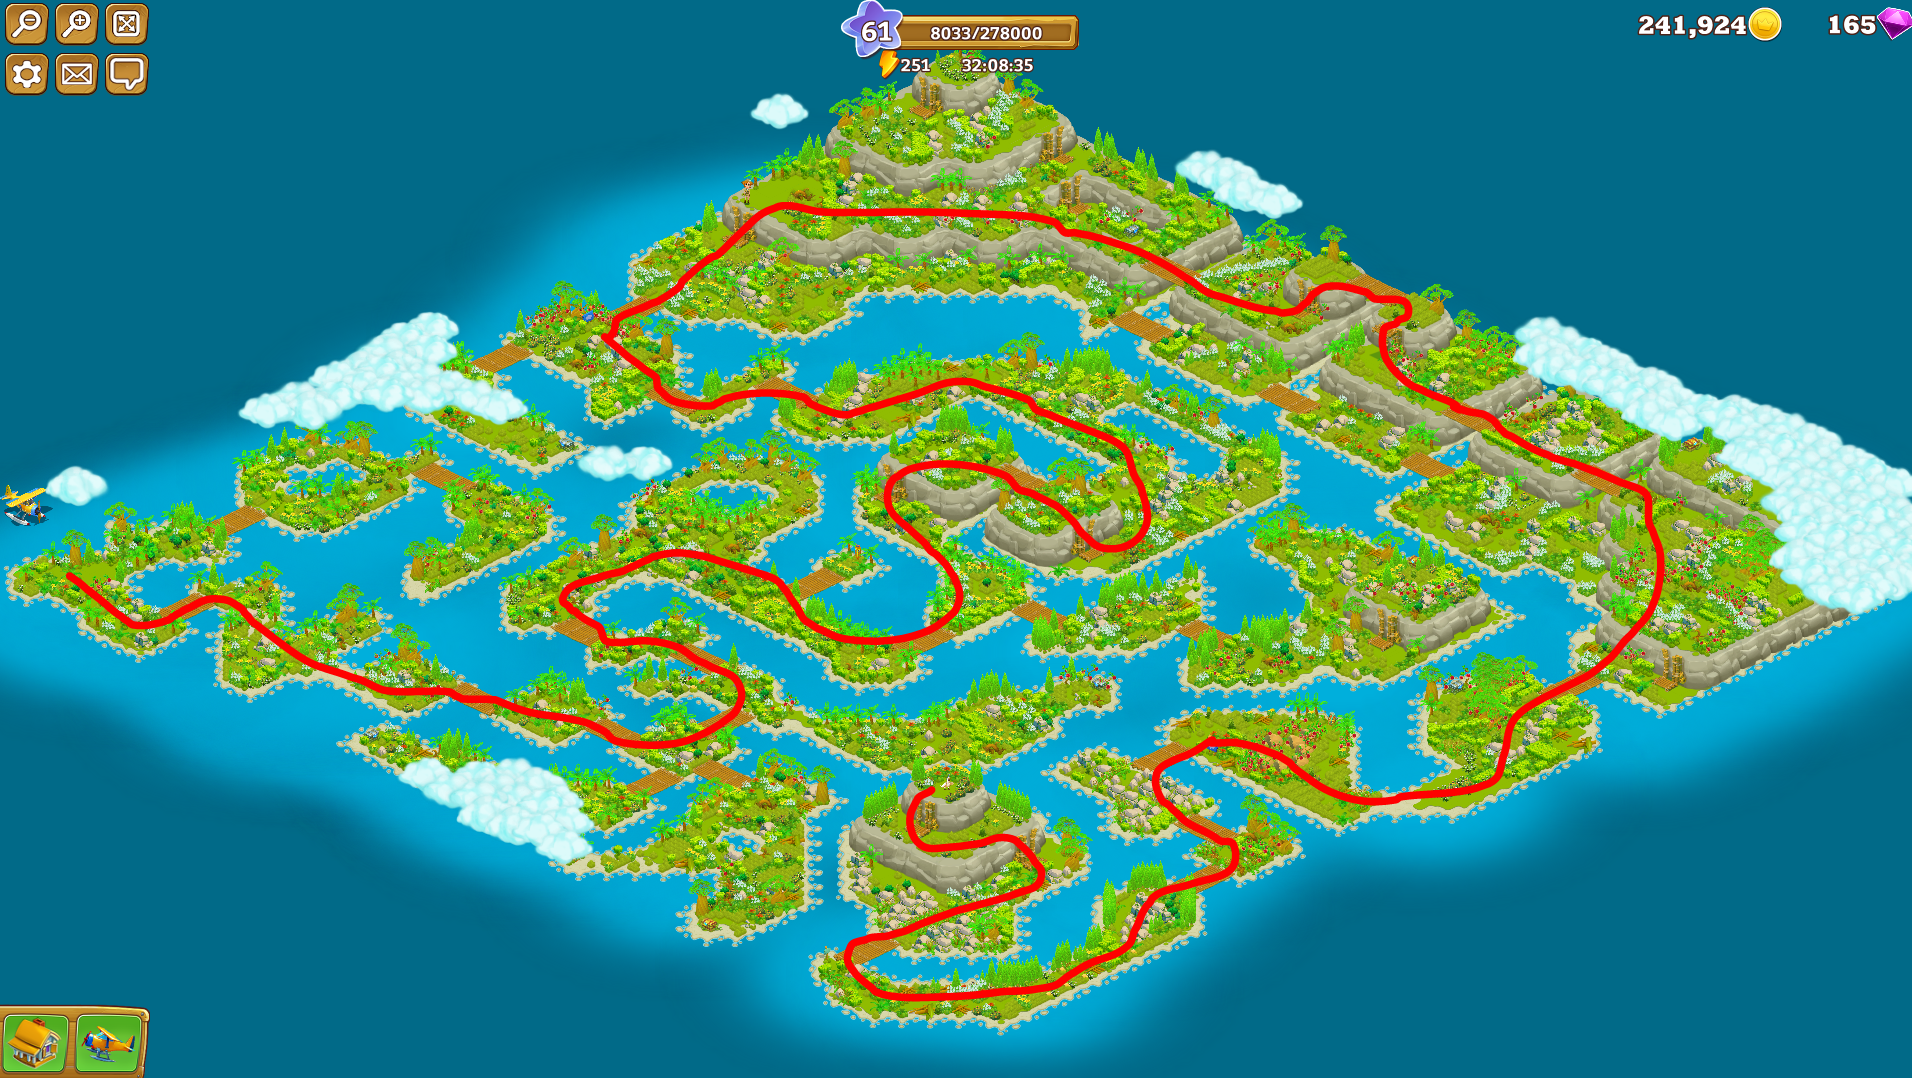 Карты версия 1.12 2. Игра дачники карта островов. Игра дачники карта острова Какаду. Игра дачники карта острова Какаду 2. Остров Какаду в игре дачники.